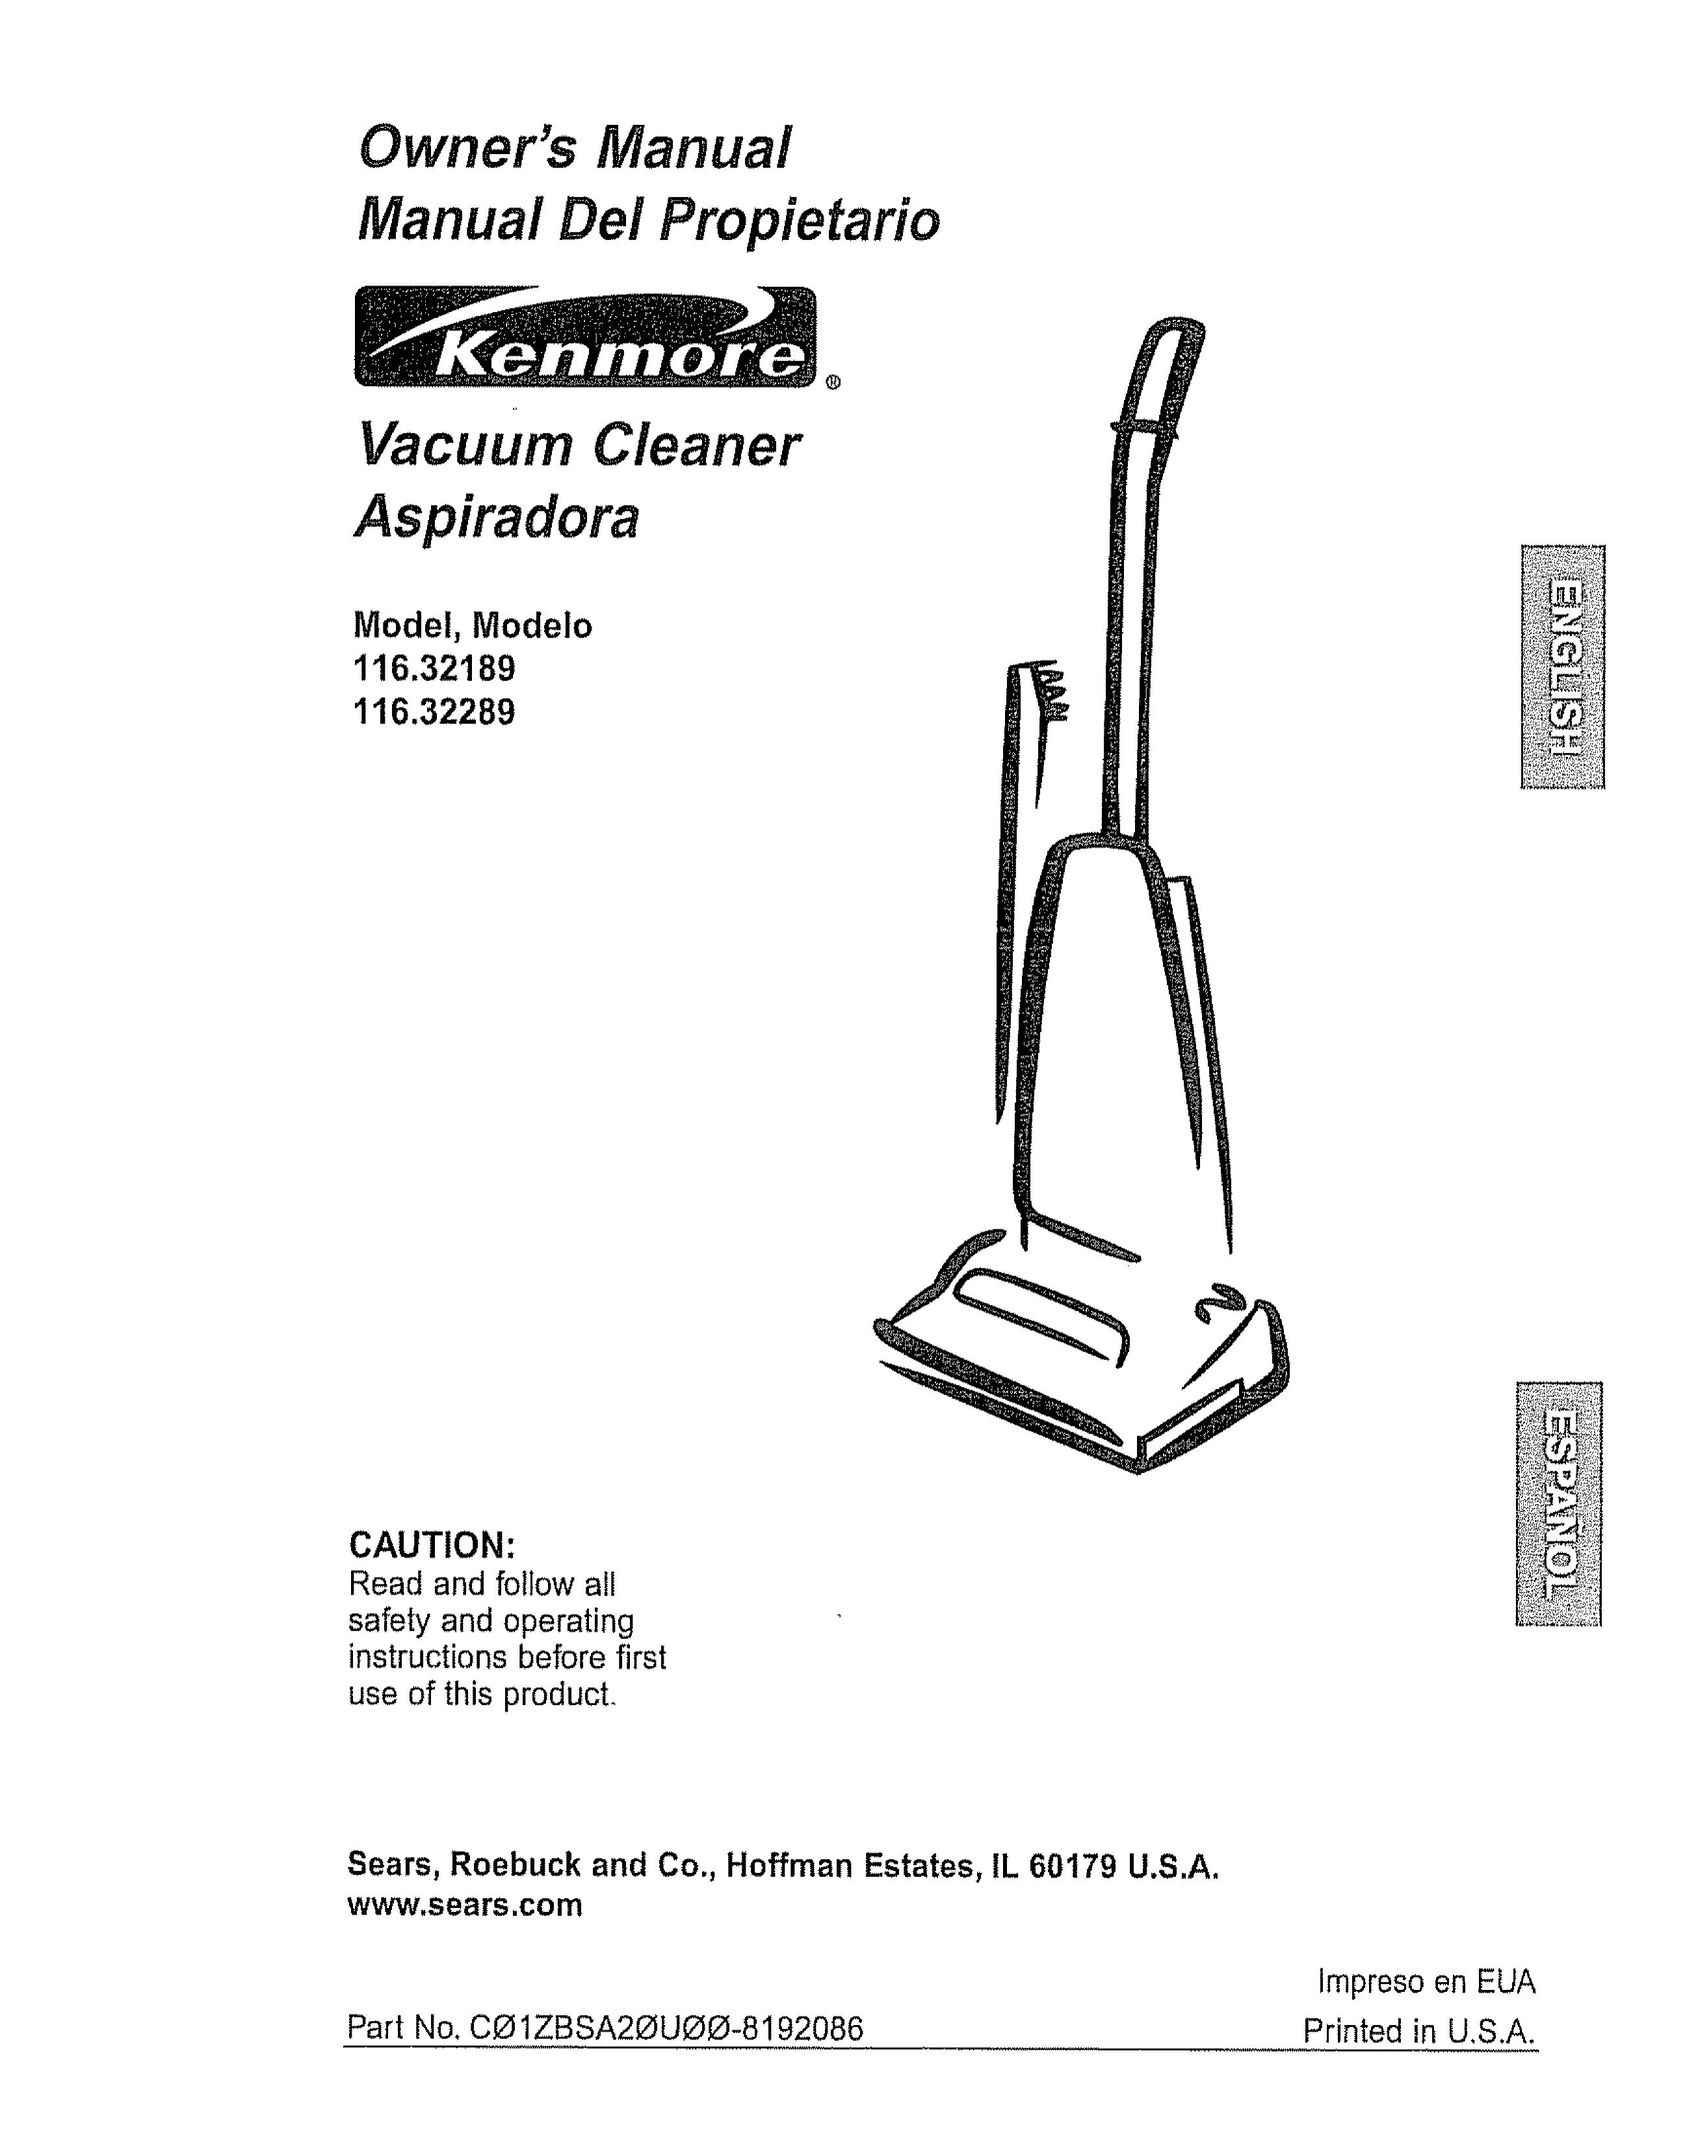 Kenmore 116.32289 Vacuum Cleaner User Manual